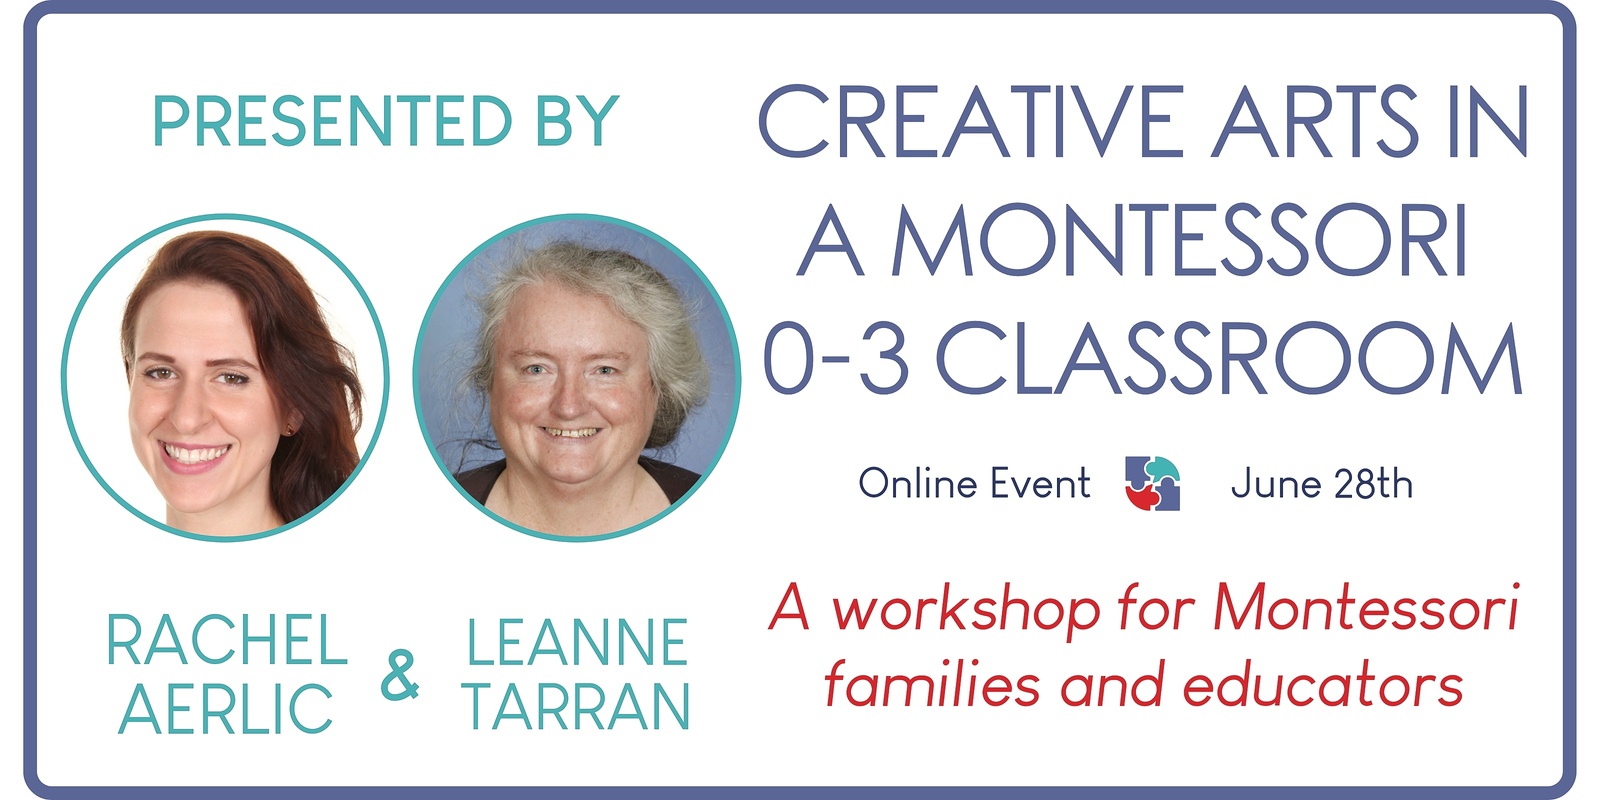 Creative Arts in a Montessori 0-3 Classroom